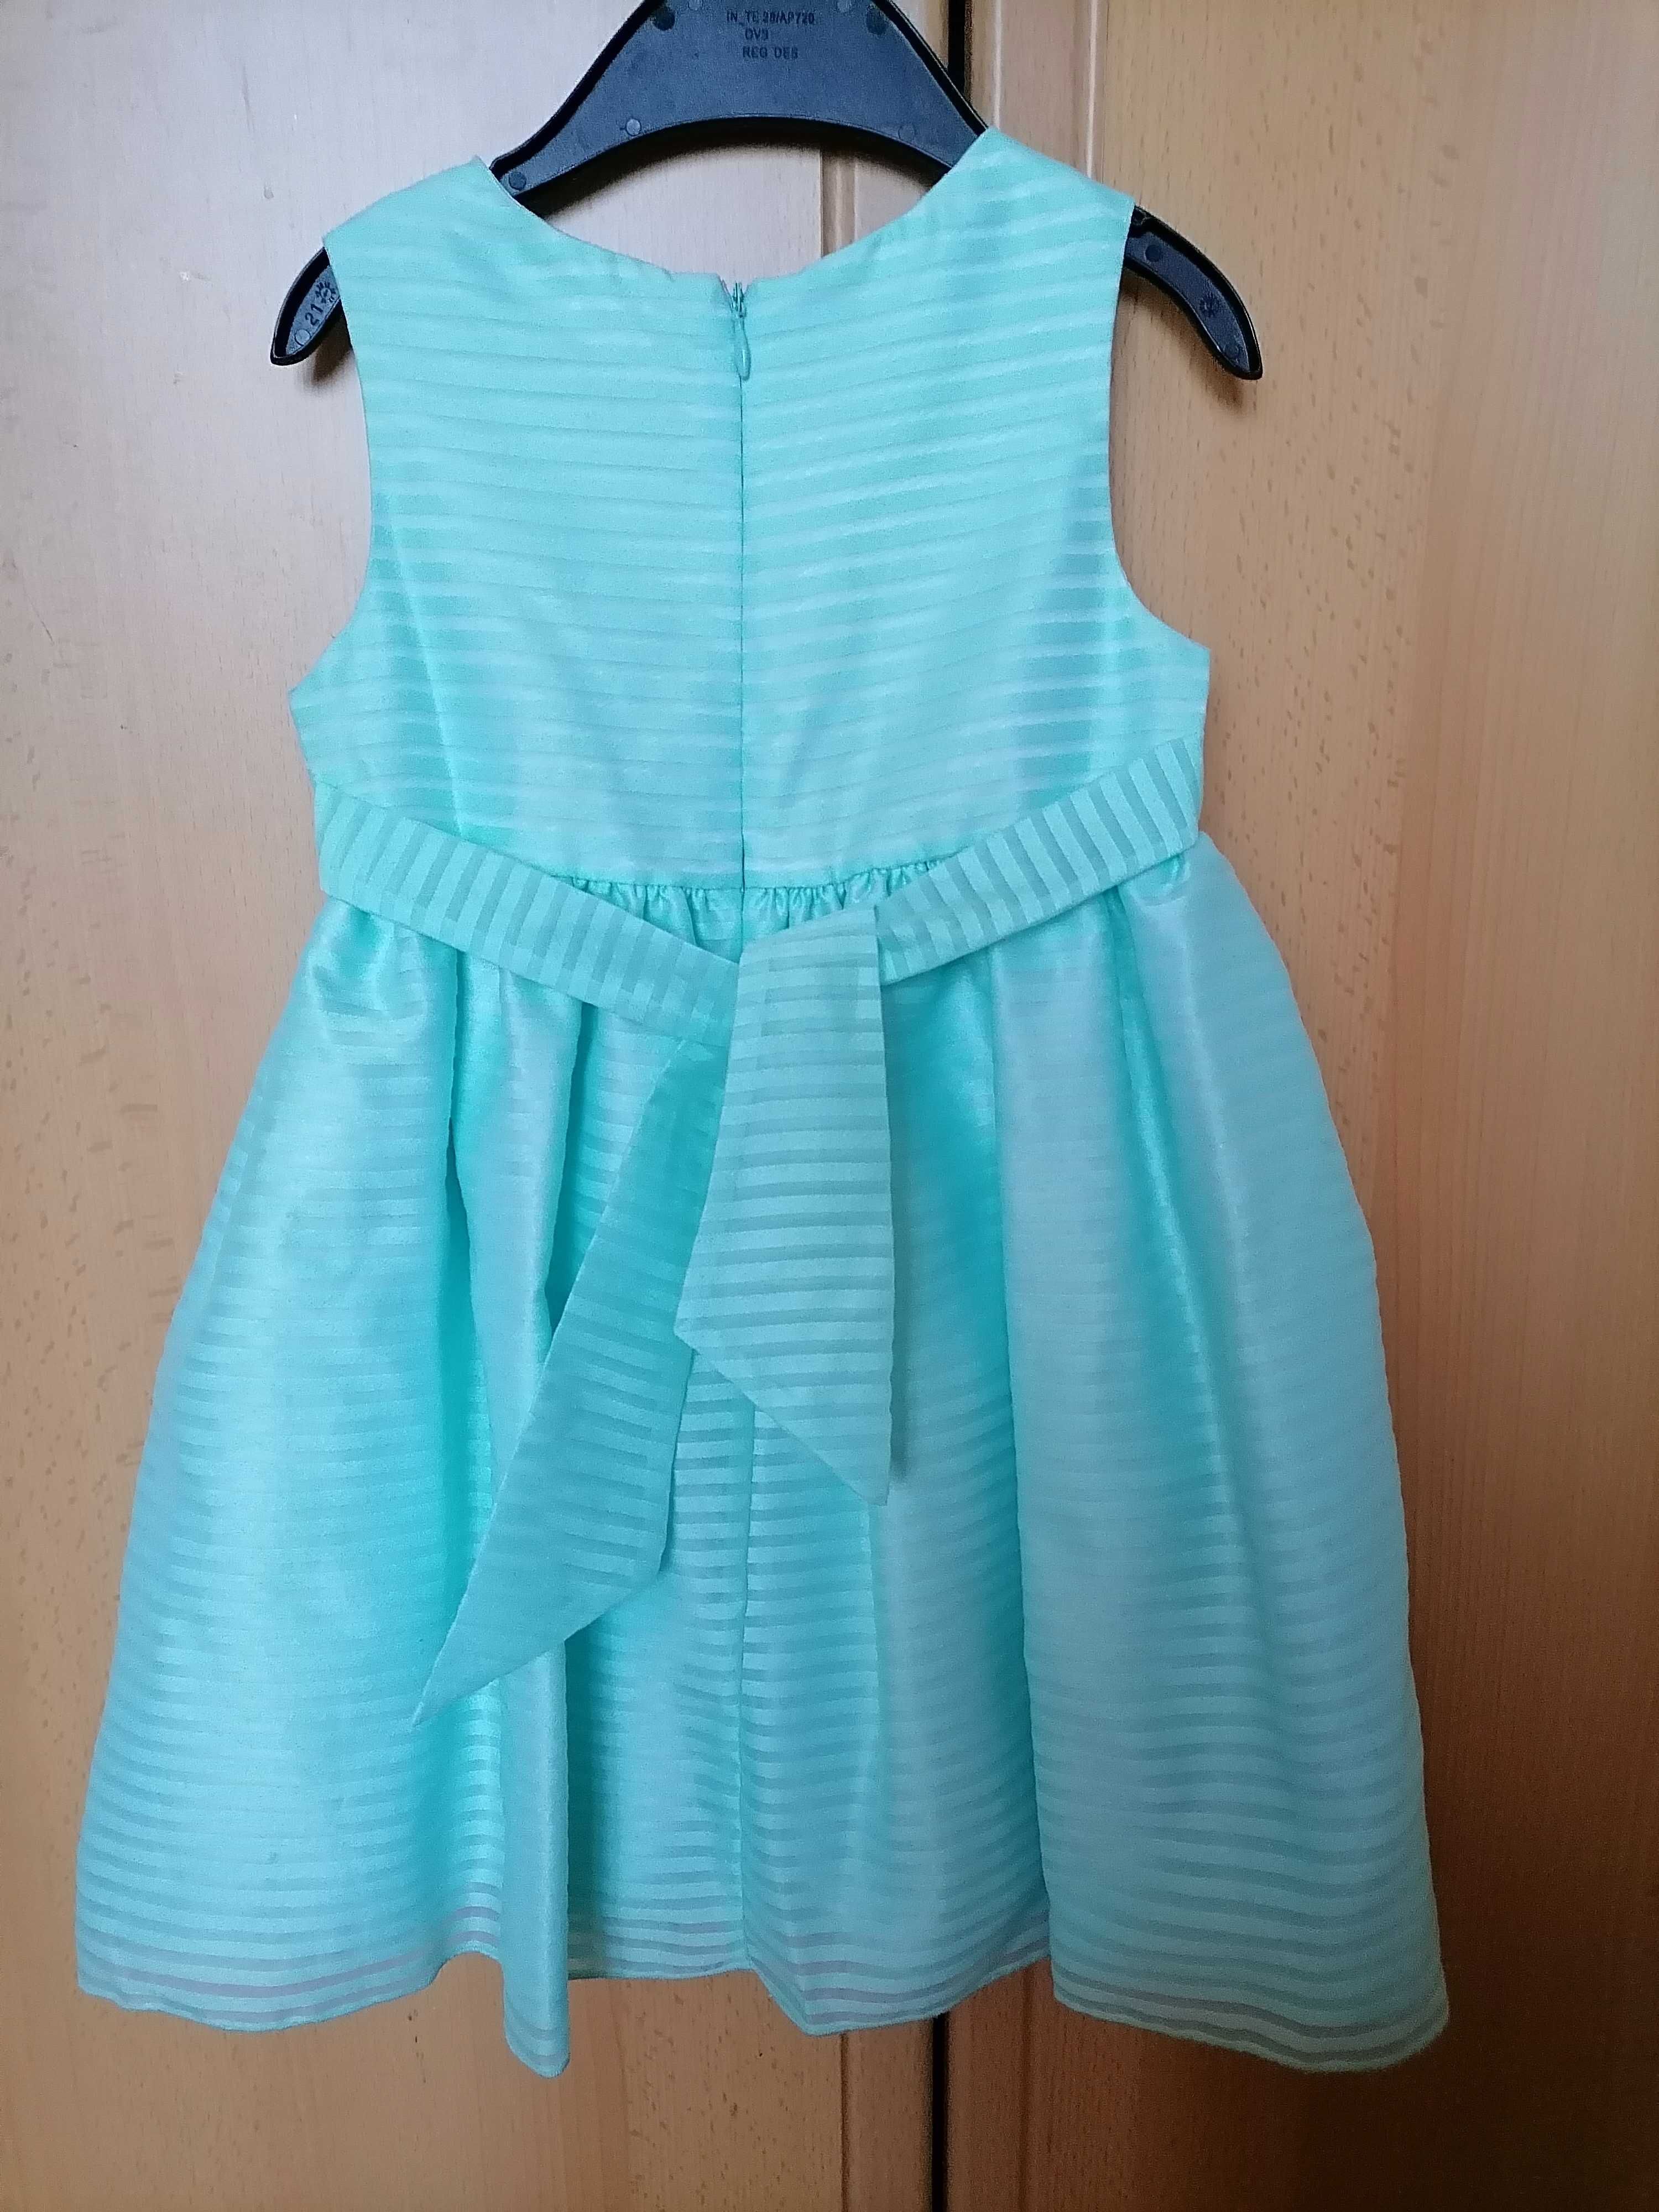 Нарядное платье ТМ American Princess на возраст 3-4 года, рост 98-104